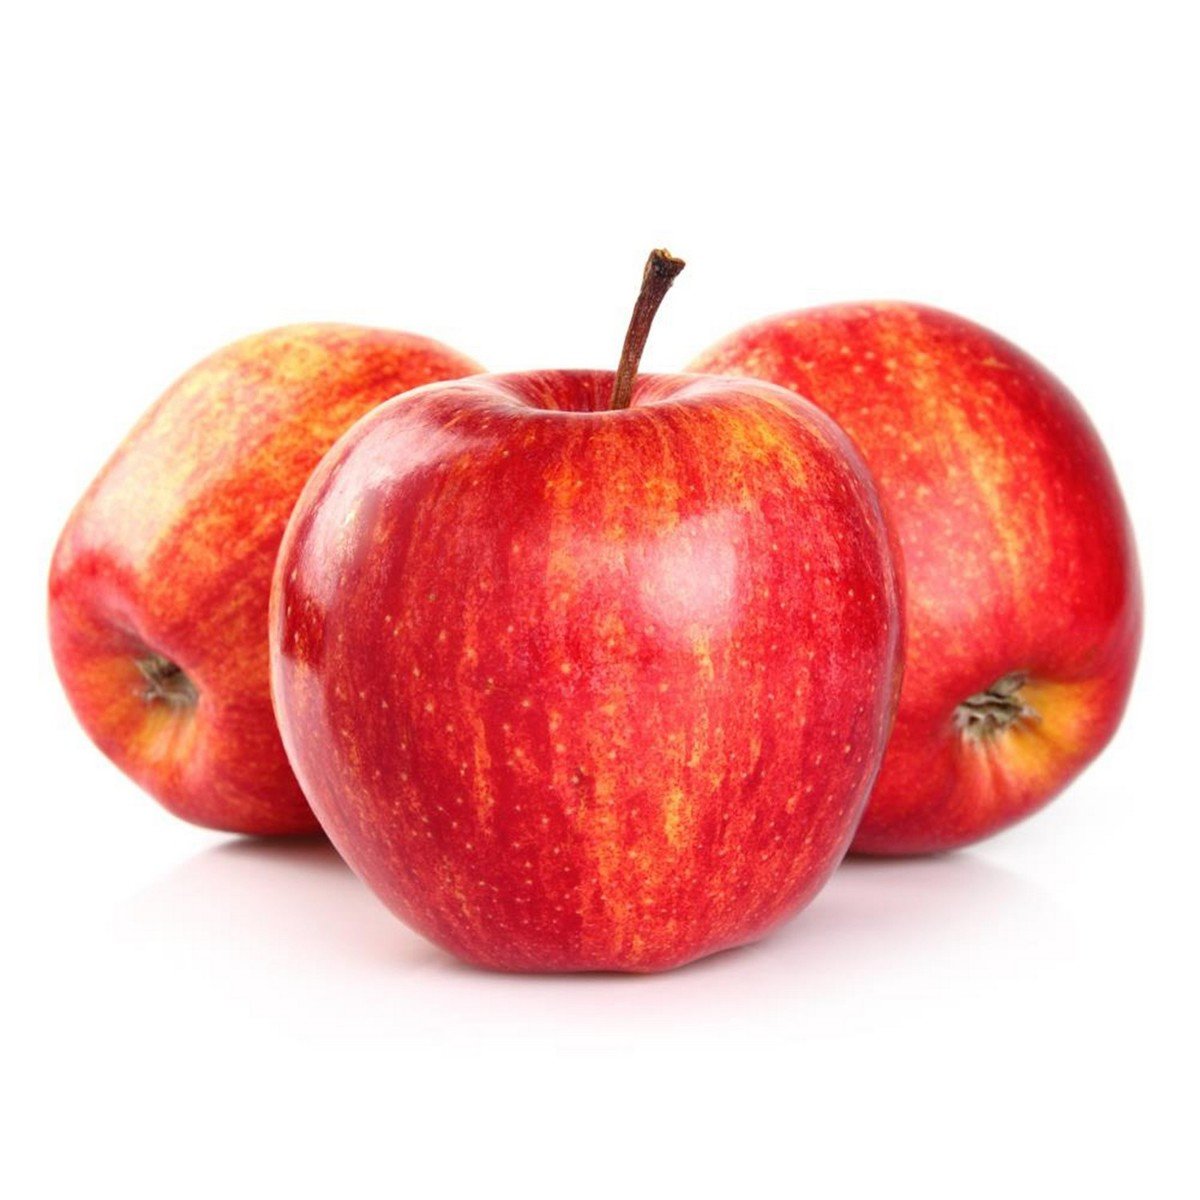 Buy Apple Royal Gala USA 1 kg Online at Best Price | Apples | Lulu KSA in UAE